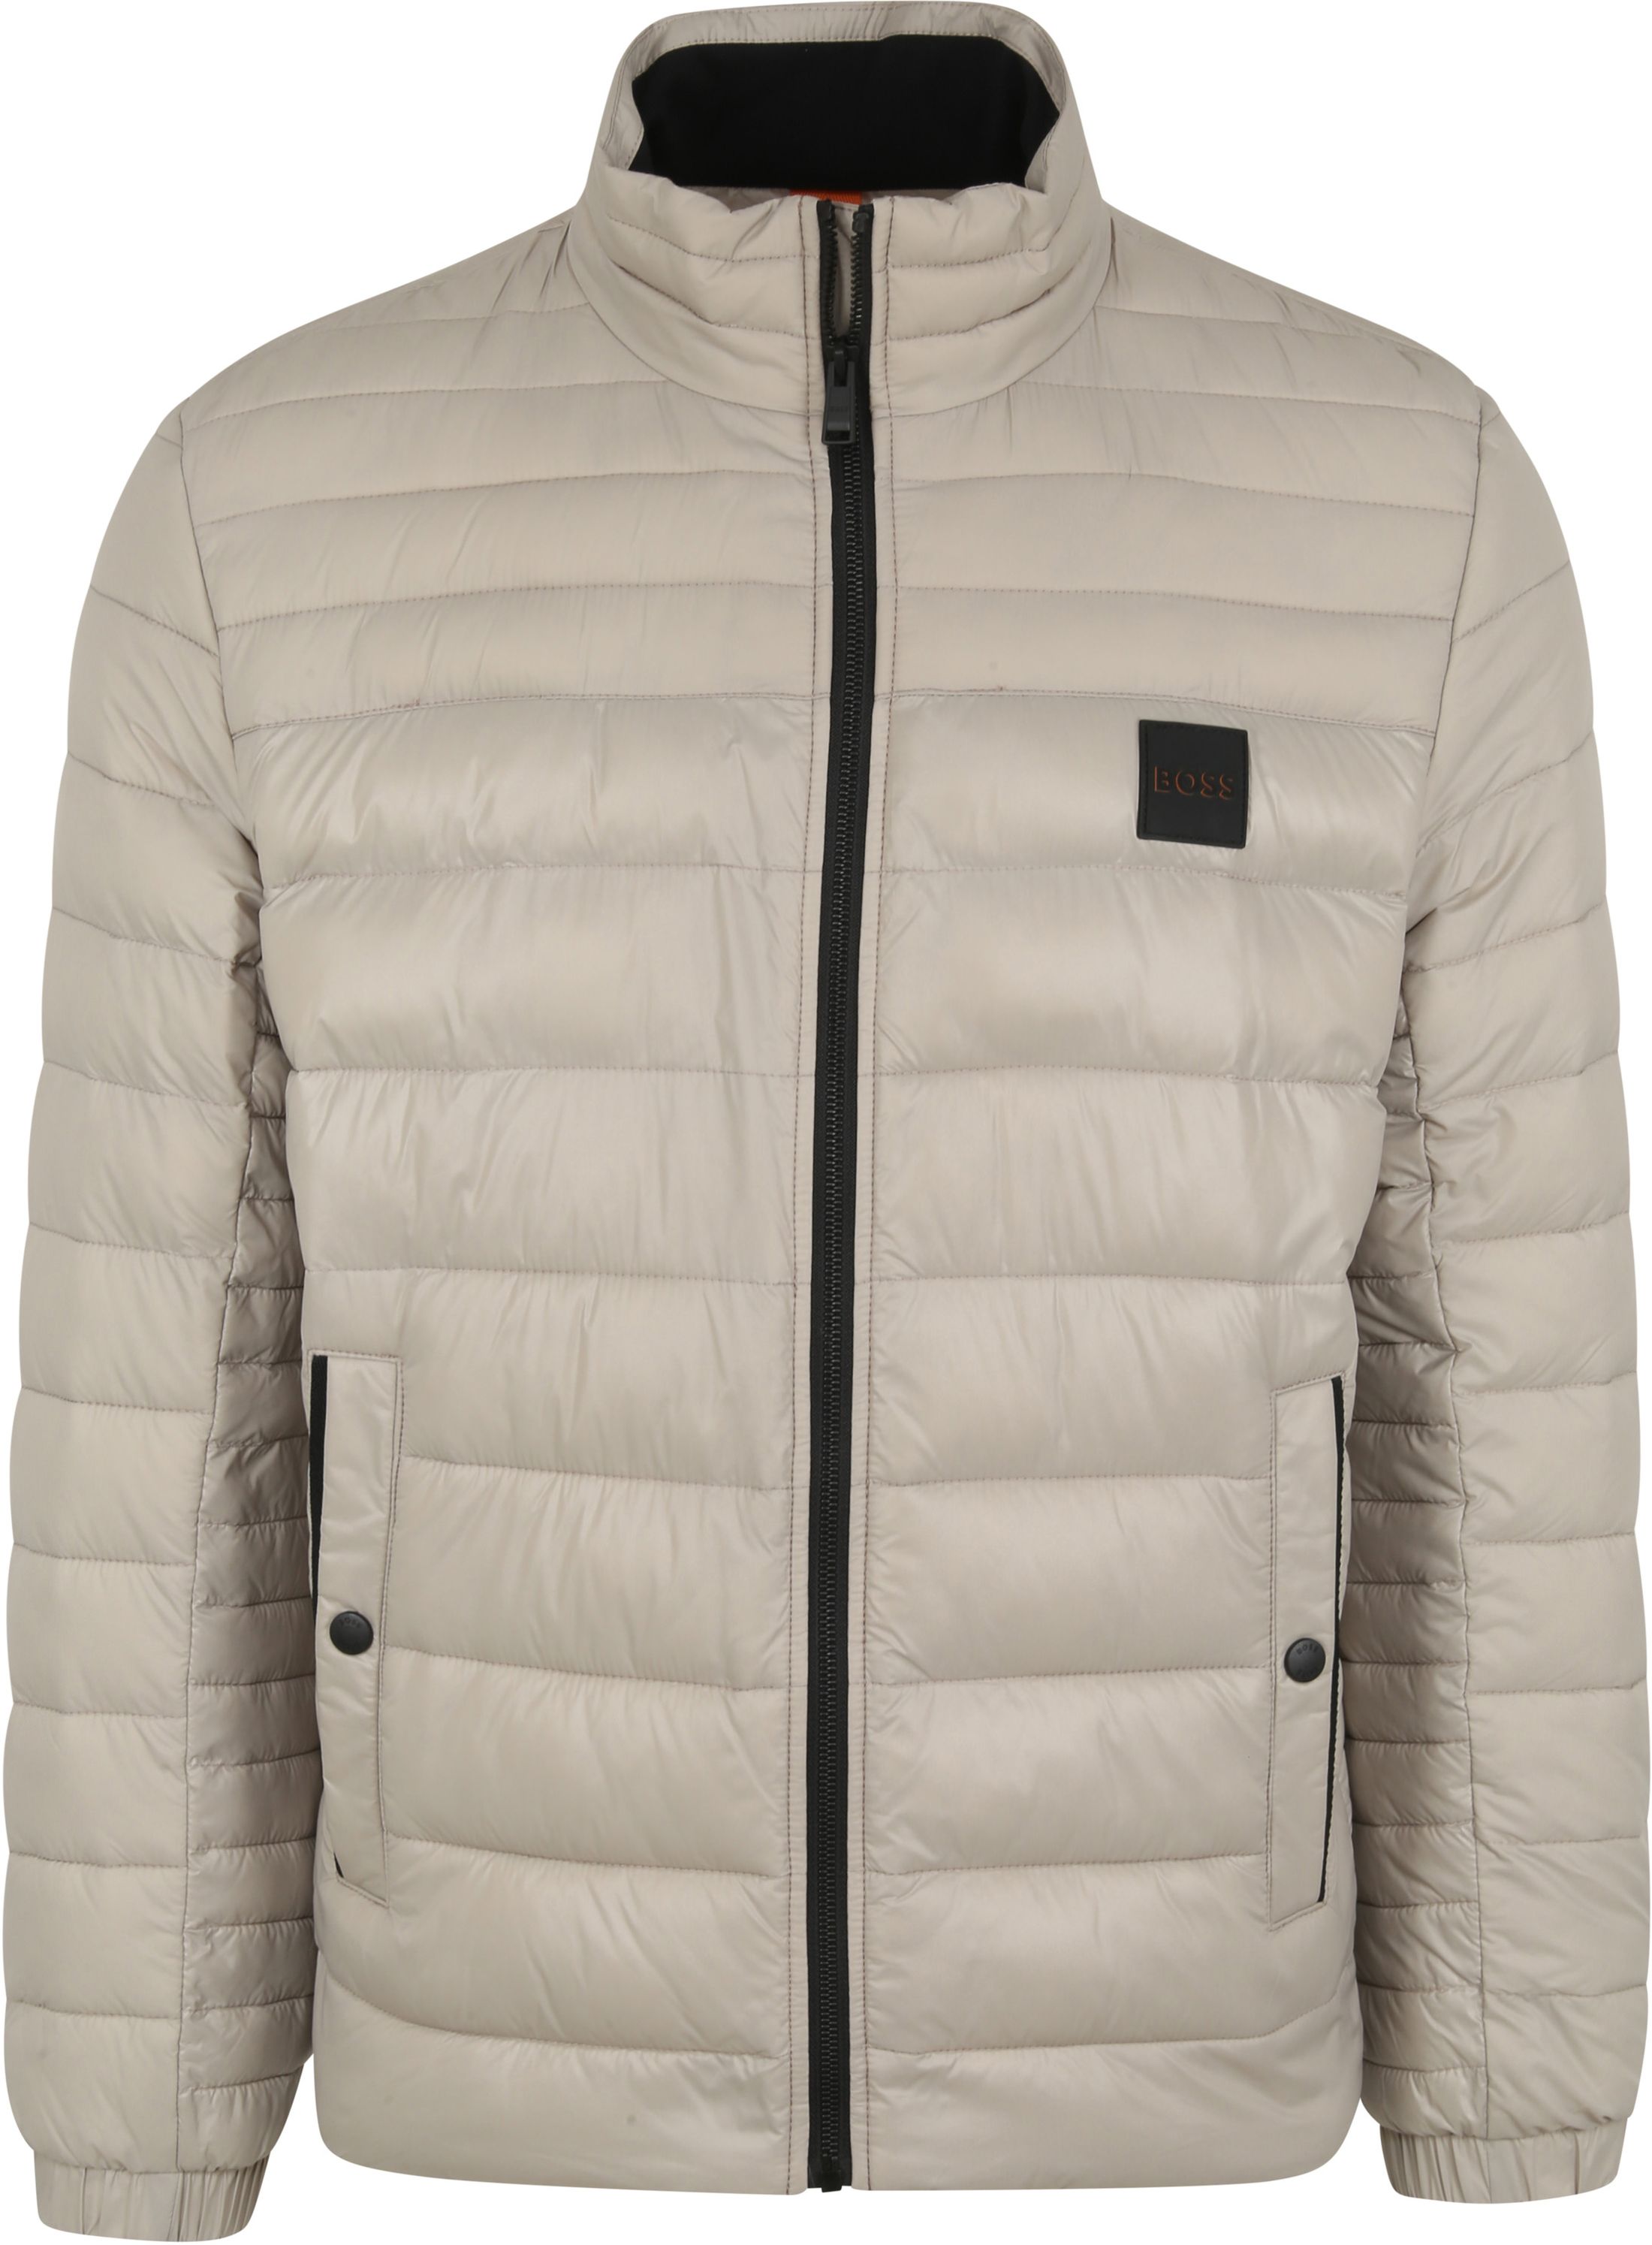 Hugo Boss Oden Jacket Beige Grey size 40-R